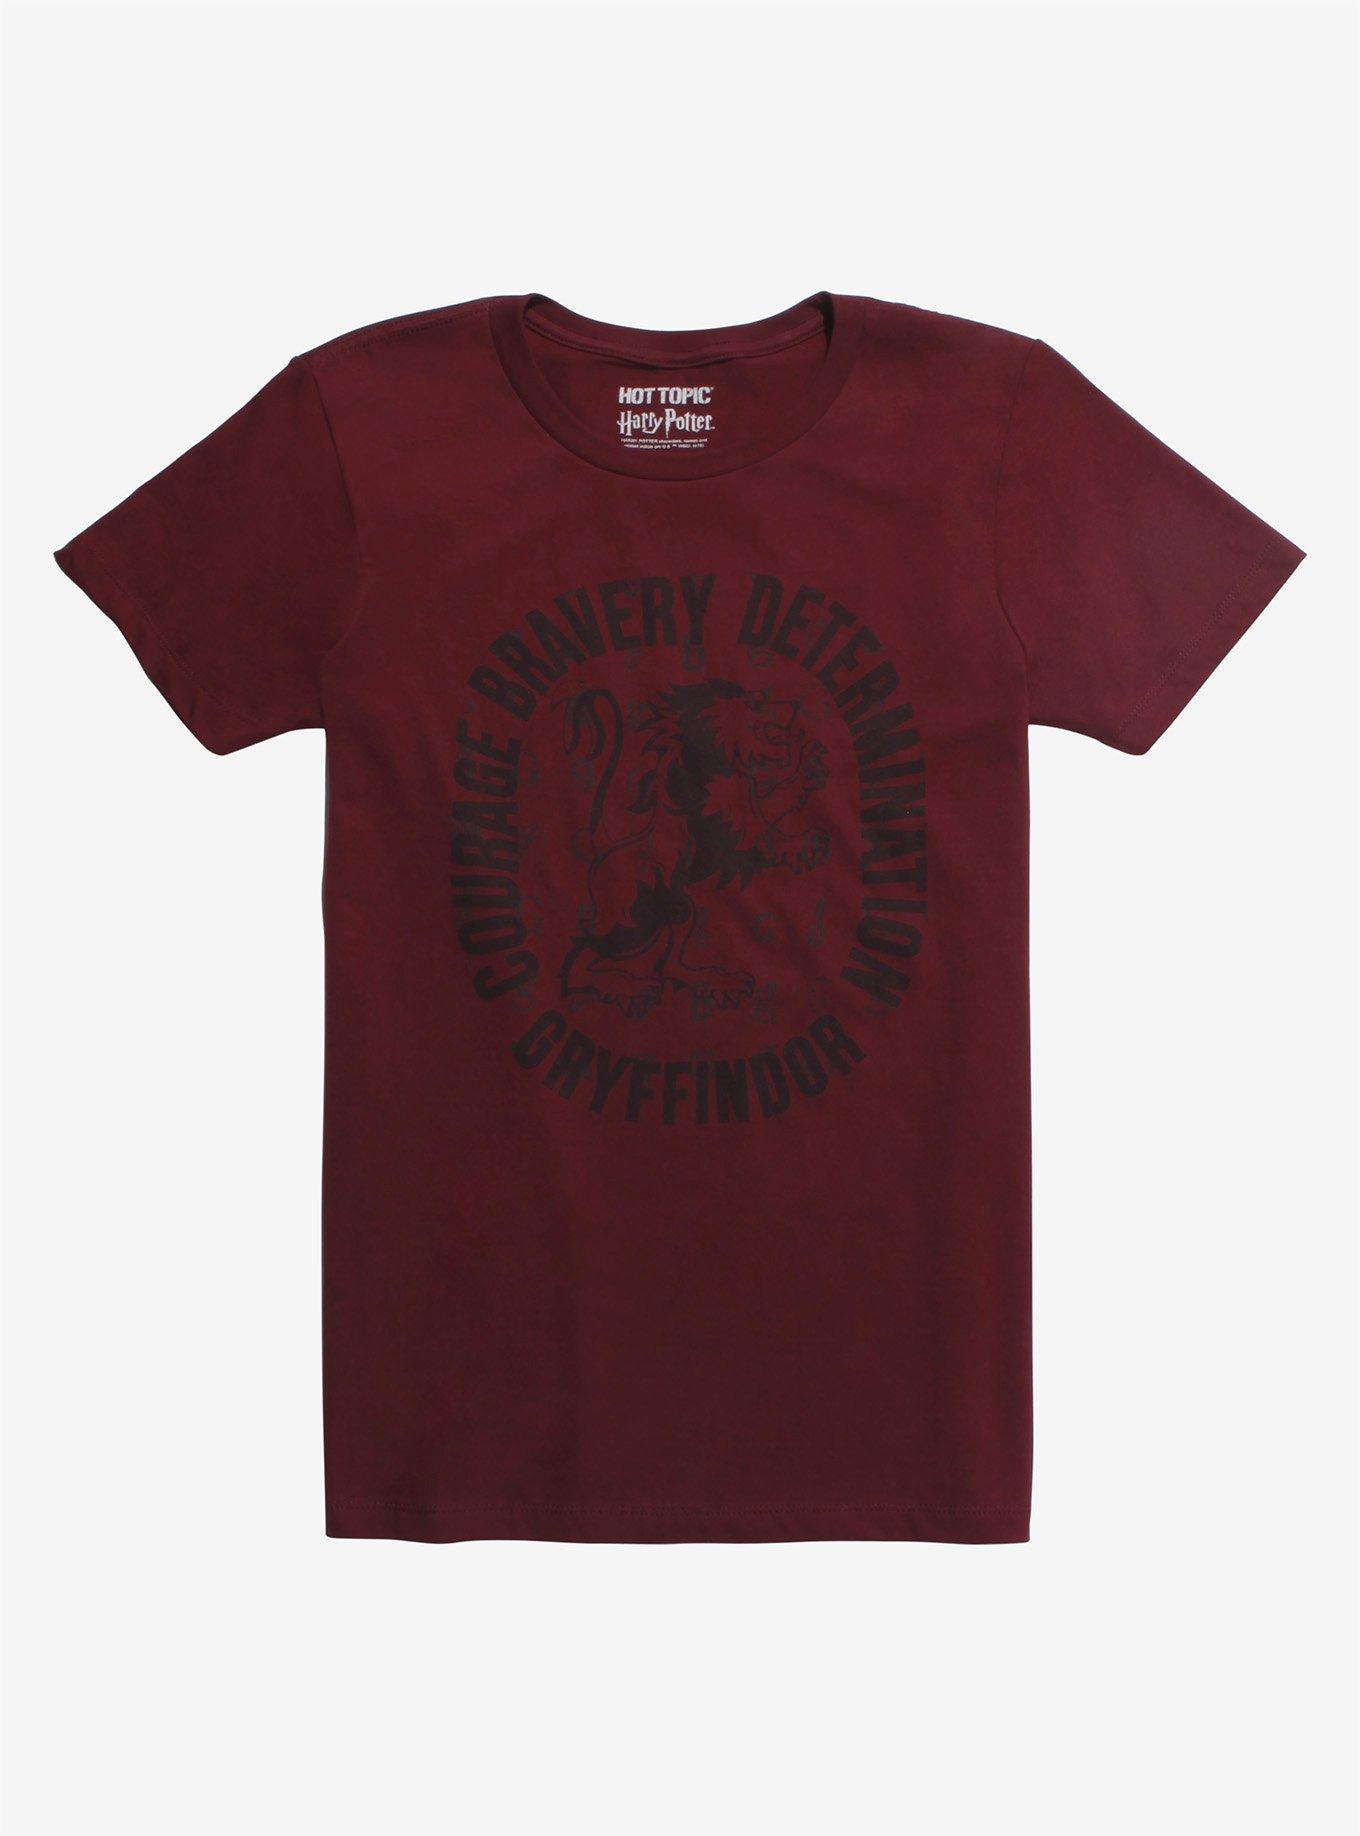 Harry Potter Gryffindor House Pride T-Shirt, RED, hi-res